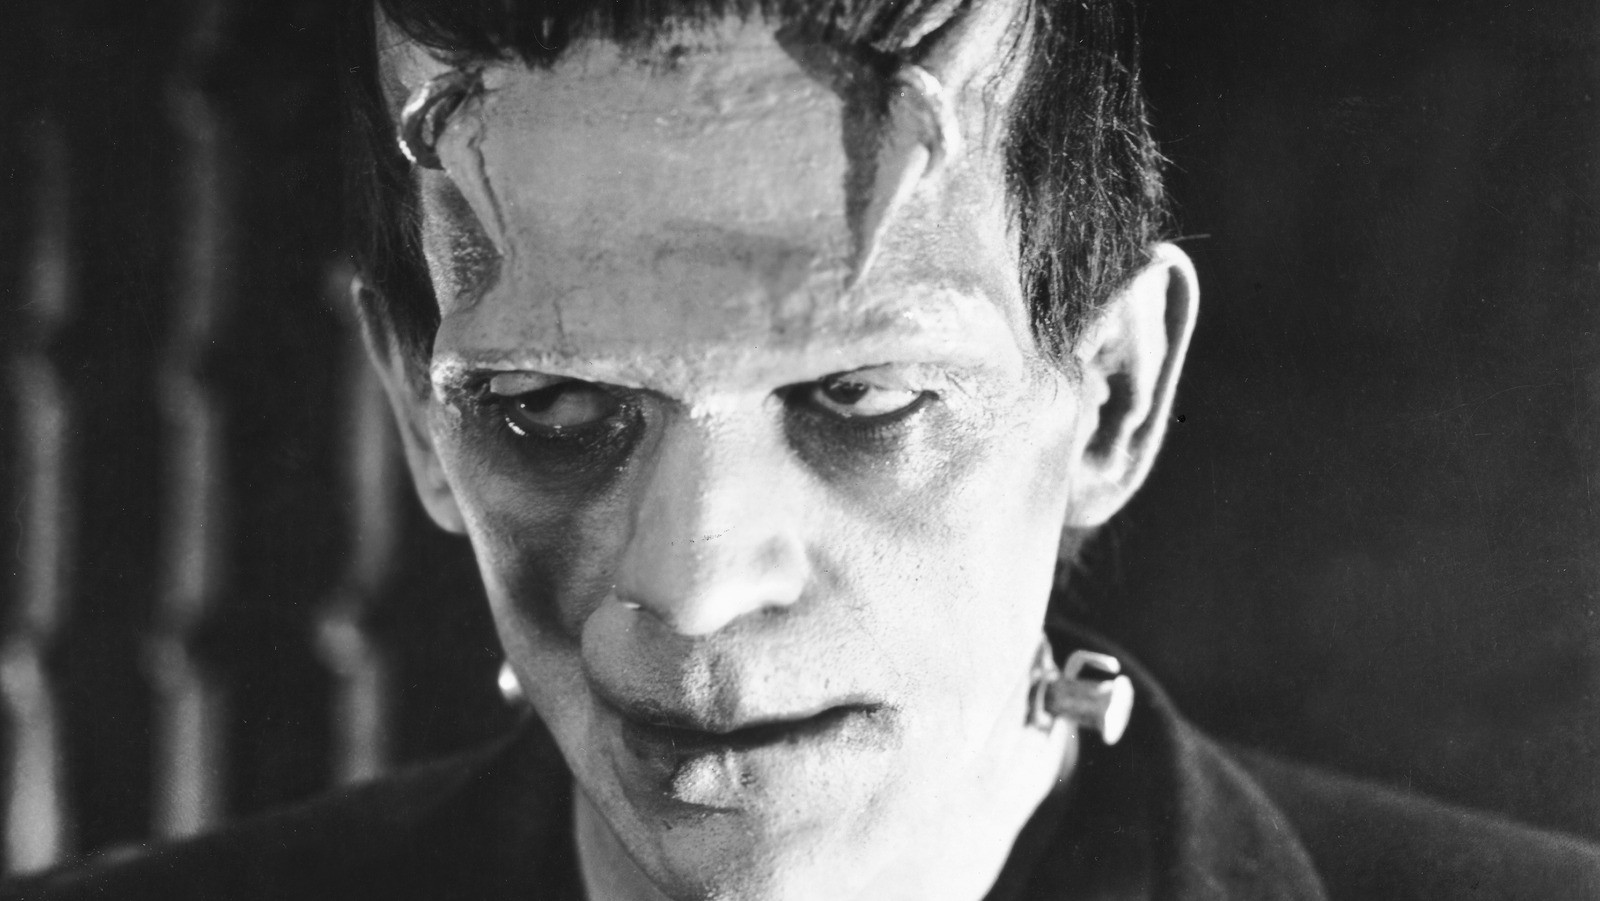 Glenn Strange's iconic portrayal of Frankenstein's monster in House of Frankenstein inspired the Hulk